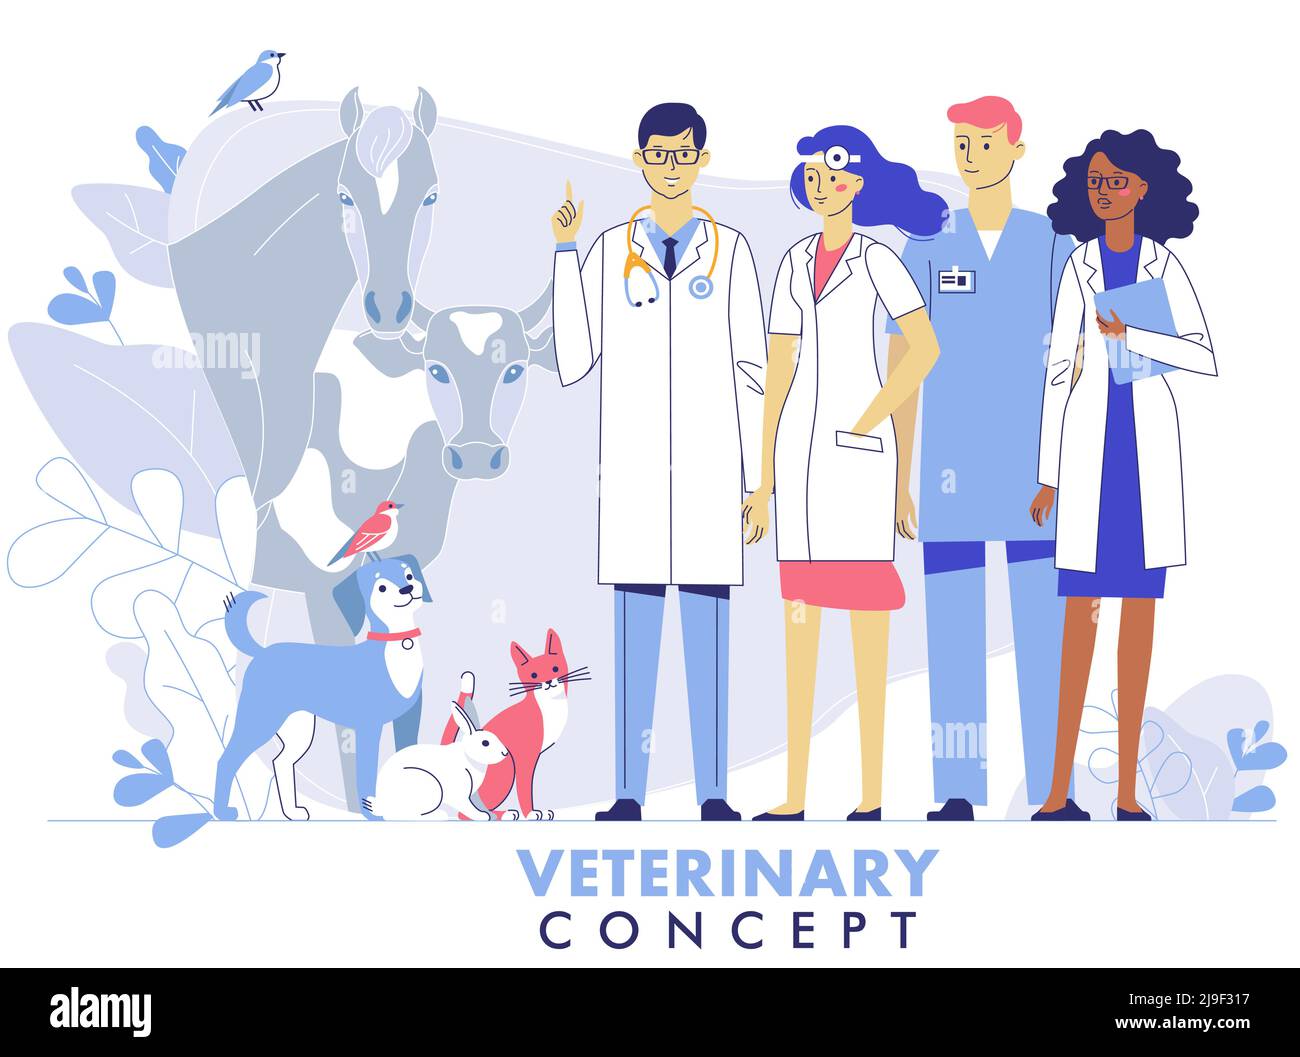 Junger Tierarzt Mann und Frau stehen zusammen mit Katze, Hund, Kuh, Pferd, Kaninchen, Vögel. Gesundheitswesen, medizinische Behandlung, Prävention und Immunisierung o Stock Vektor